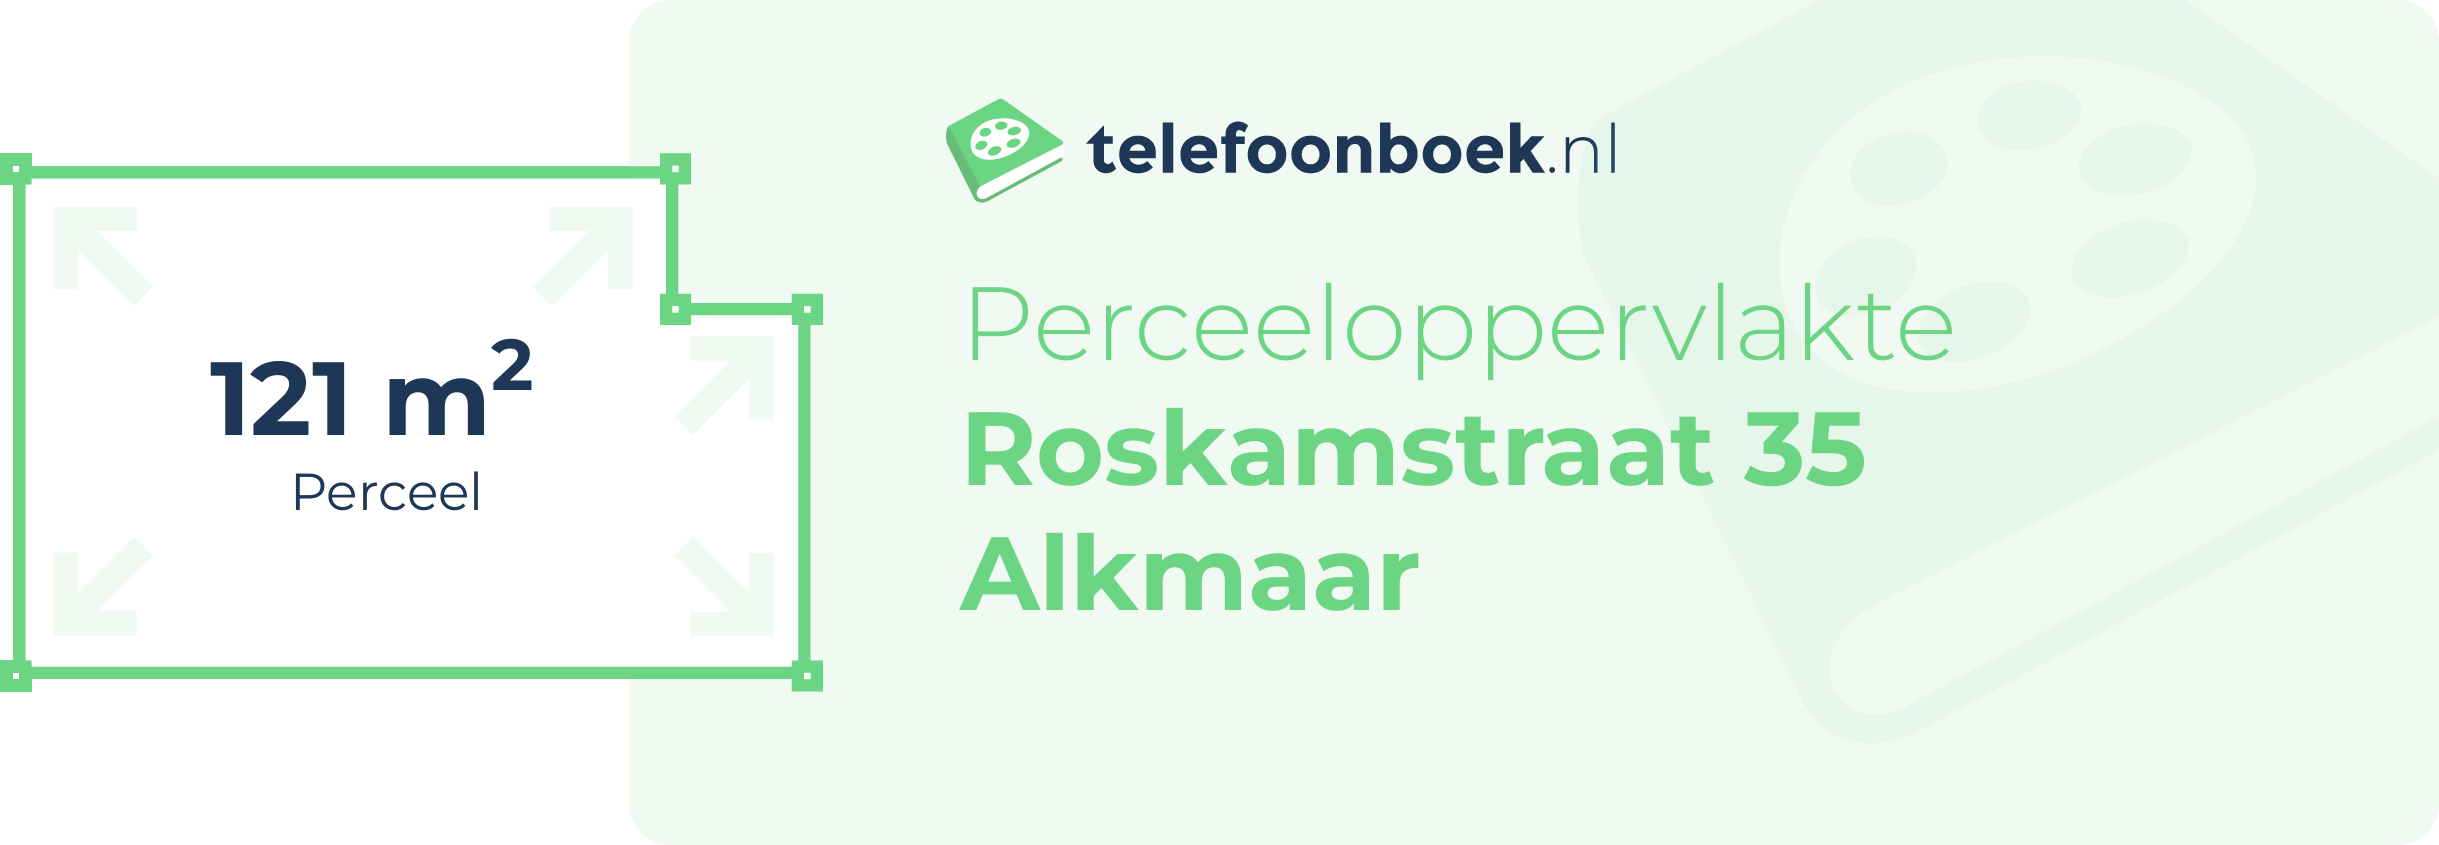 Perceeloppervlakte Roskamstraat 35 Alkmaar